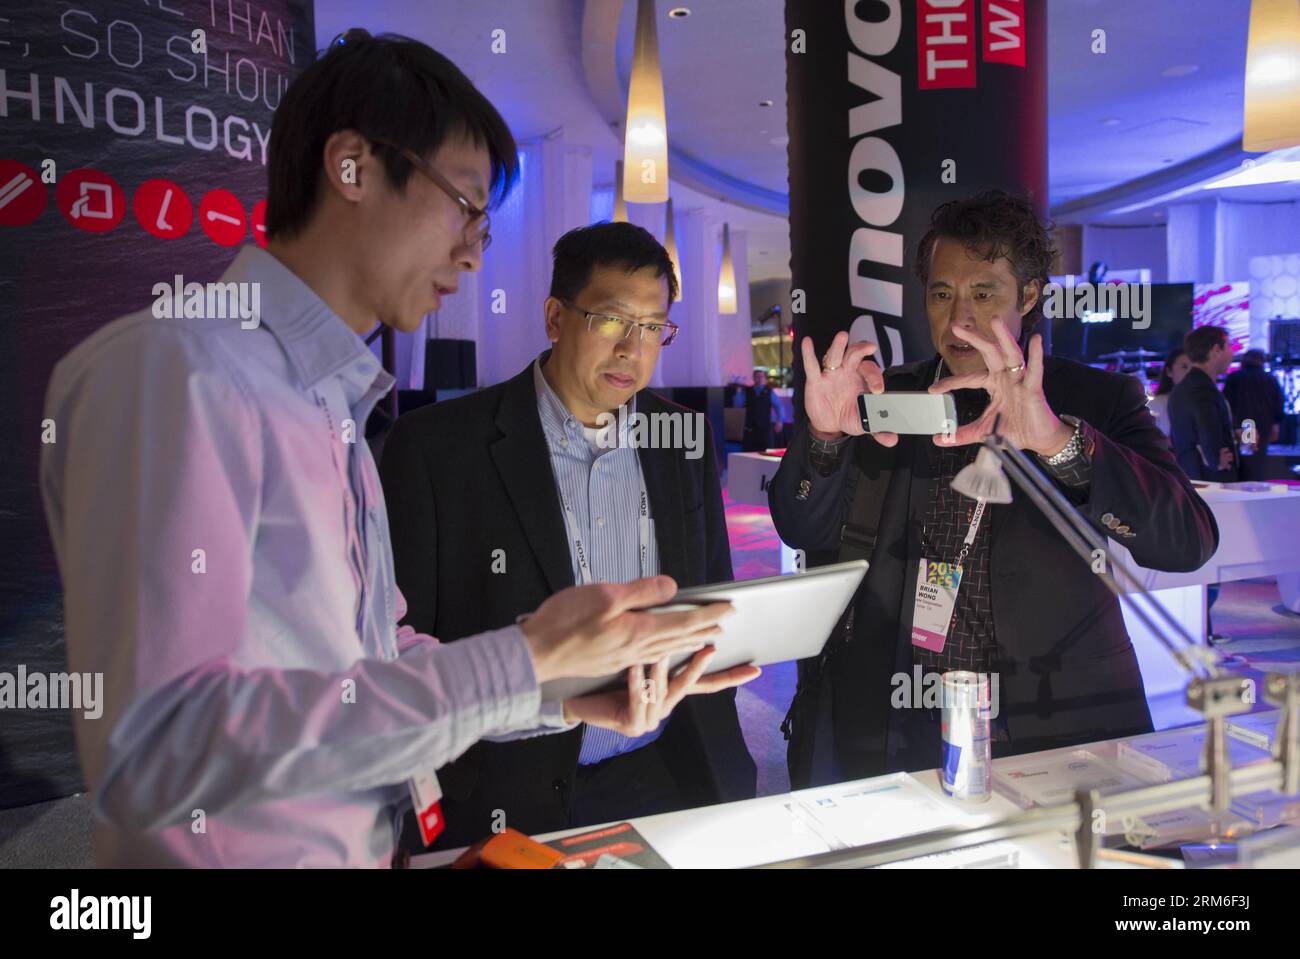 (140109) -- LAS VEGAS, 9 janv. 2014 (Xinhua) -- les gens visitent le stand Lenovo de la Chine au ces 2014 le 7 janvier 2014, à Las Vegas, aux États-Unis. Le ces International 2014 a ouvert mardi matin et durera jusqu'à vendredi. (Xinhua/Yang Lei) États-Unis-LAS VEGAS-EXPOSITION ÉLECTRONIQUE GRAND PUBLIC-MARQUE CHINOISE PUBLICATIONxNOTxINxCHN Las Vegas janvier 9 2014 des célébrités de XINHUA visitent China S LENOVO Stand au ces international 2014 LE 7 2014 janvier à Las Vegas aux États-Unis le ces international 2014 a ouvert mardi matin et se chargera jusqu'à vendredi XINHUA Yang Lei U. s Las Vegas Consumer Banque D'Images